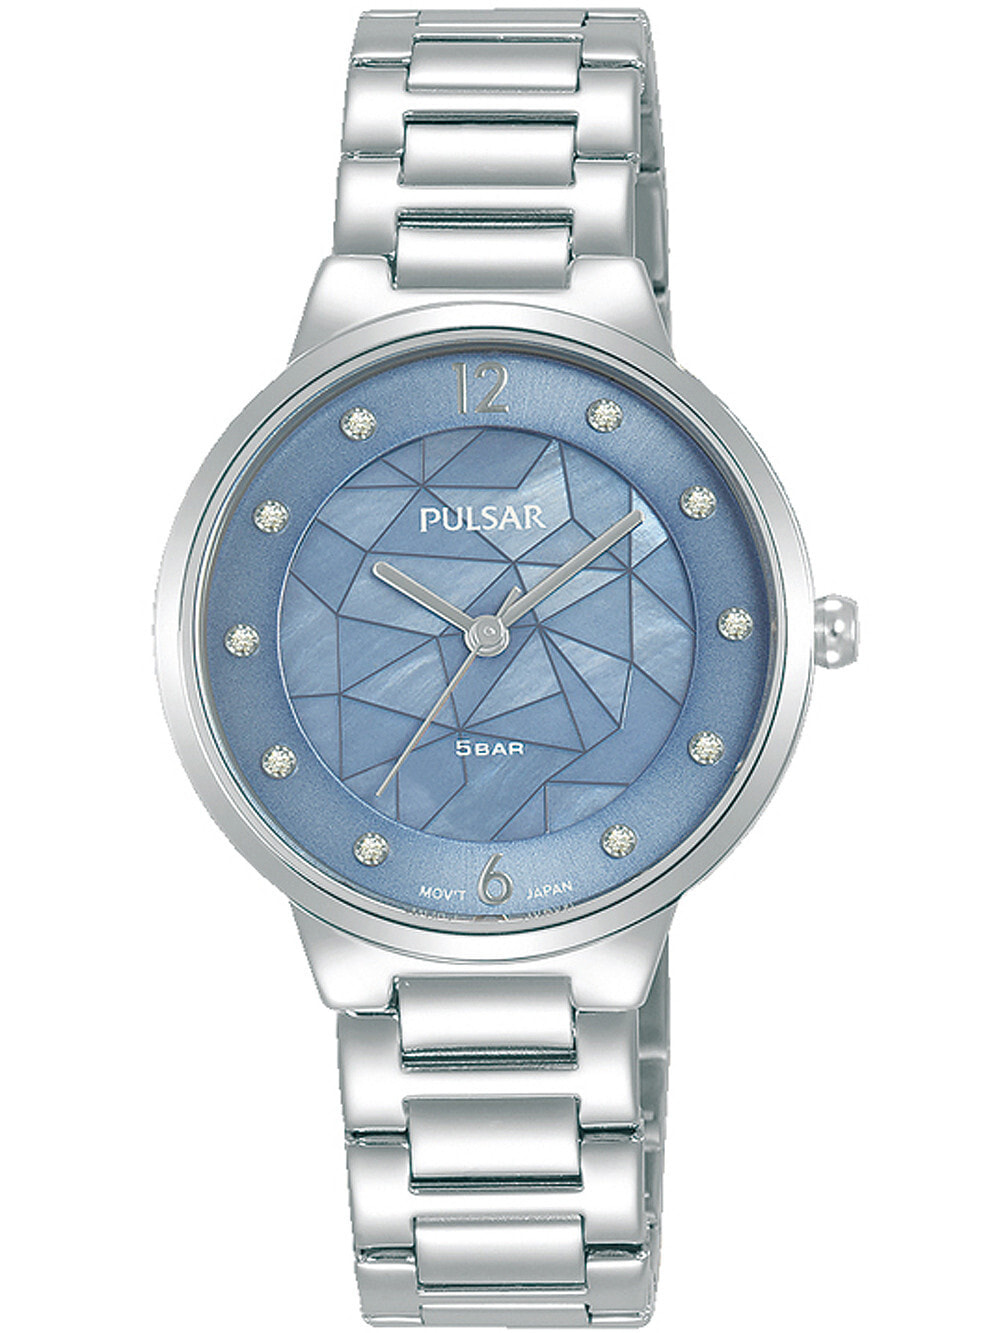 Женские наручные кварцевые часы Pulsar ремешок из нержавеющей стали. Водонепроницаемость-5 АТМ. Защищенное от царапин минеральное стекло защищает ваши часы от непроизвольных травм.  Украшен камнями  Swarovski  перламутровый циферблат.